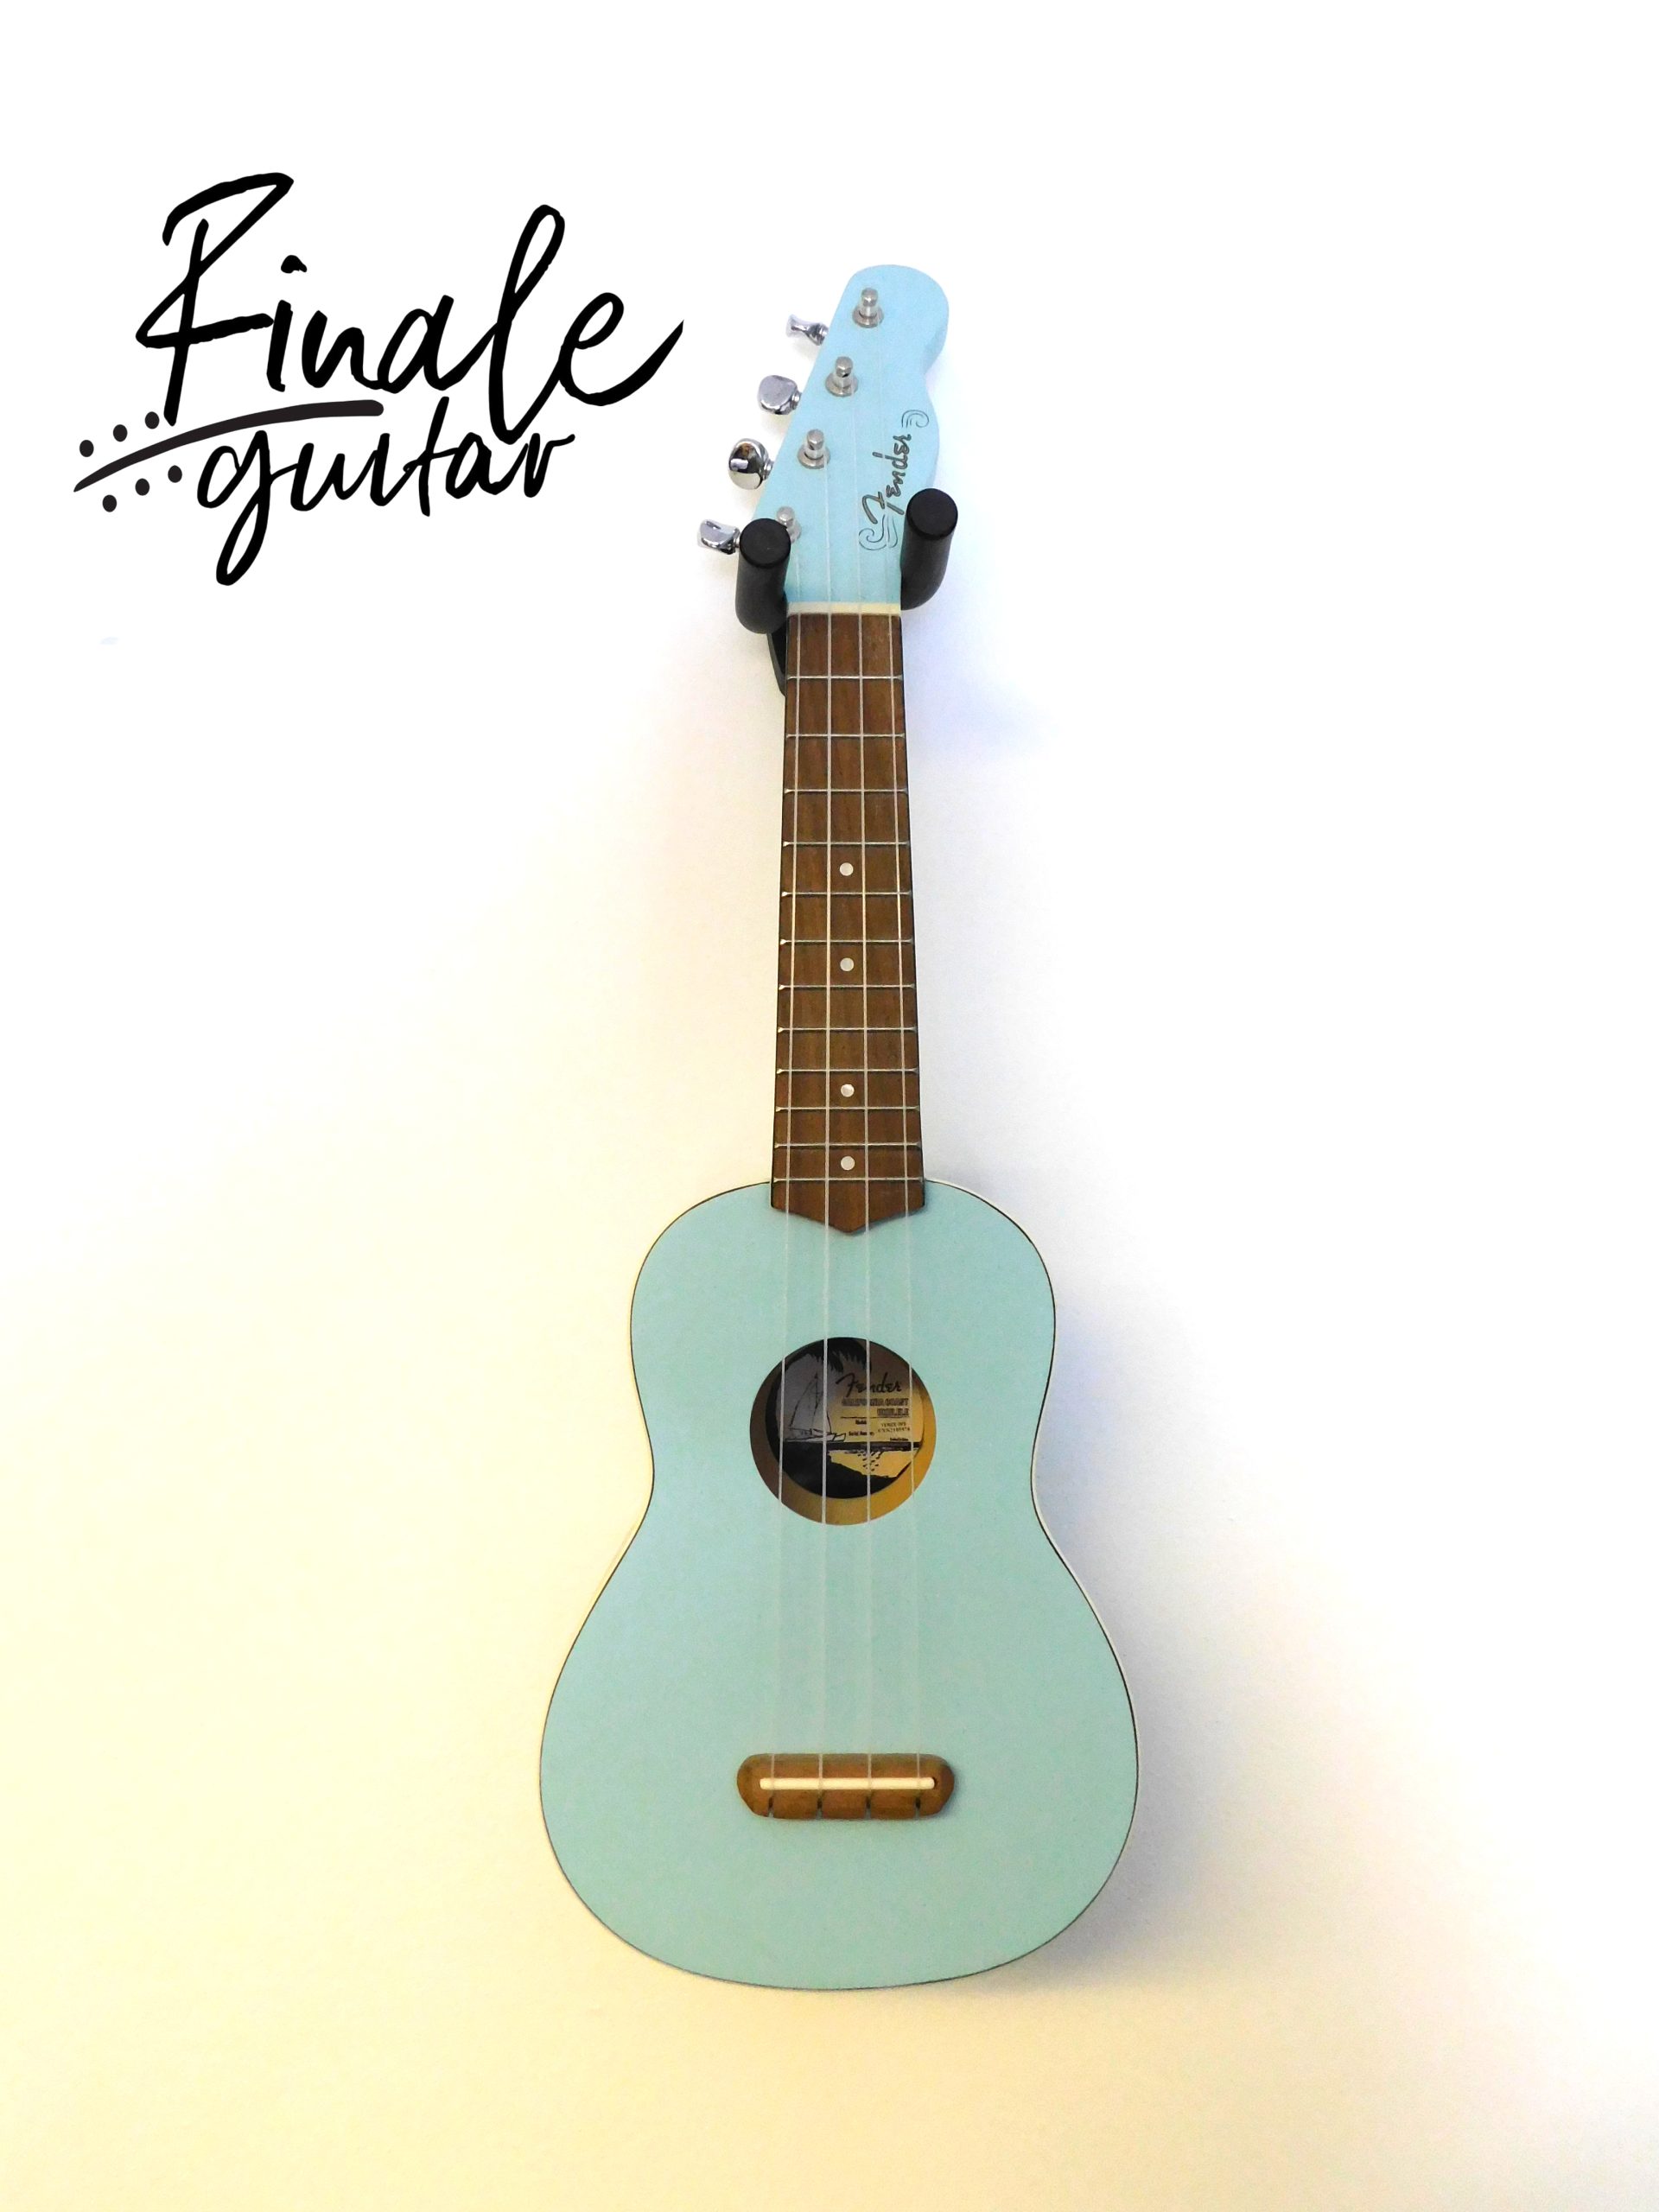 Fender Ukulele for sale in our Sheffield guitar shop, Finale Guitar